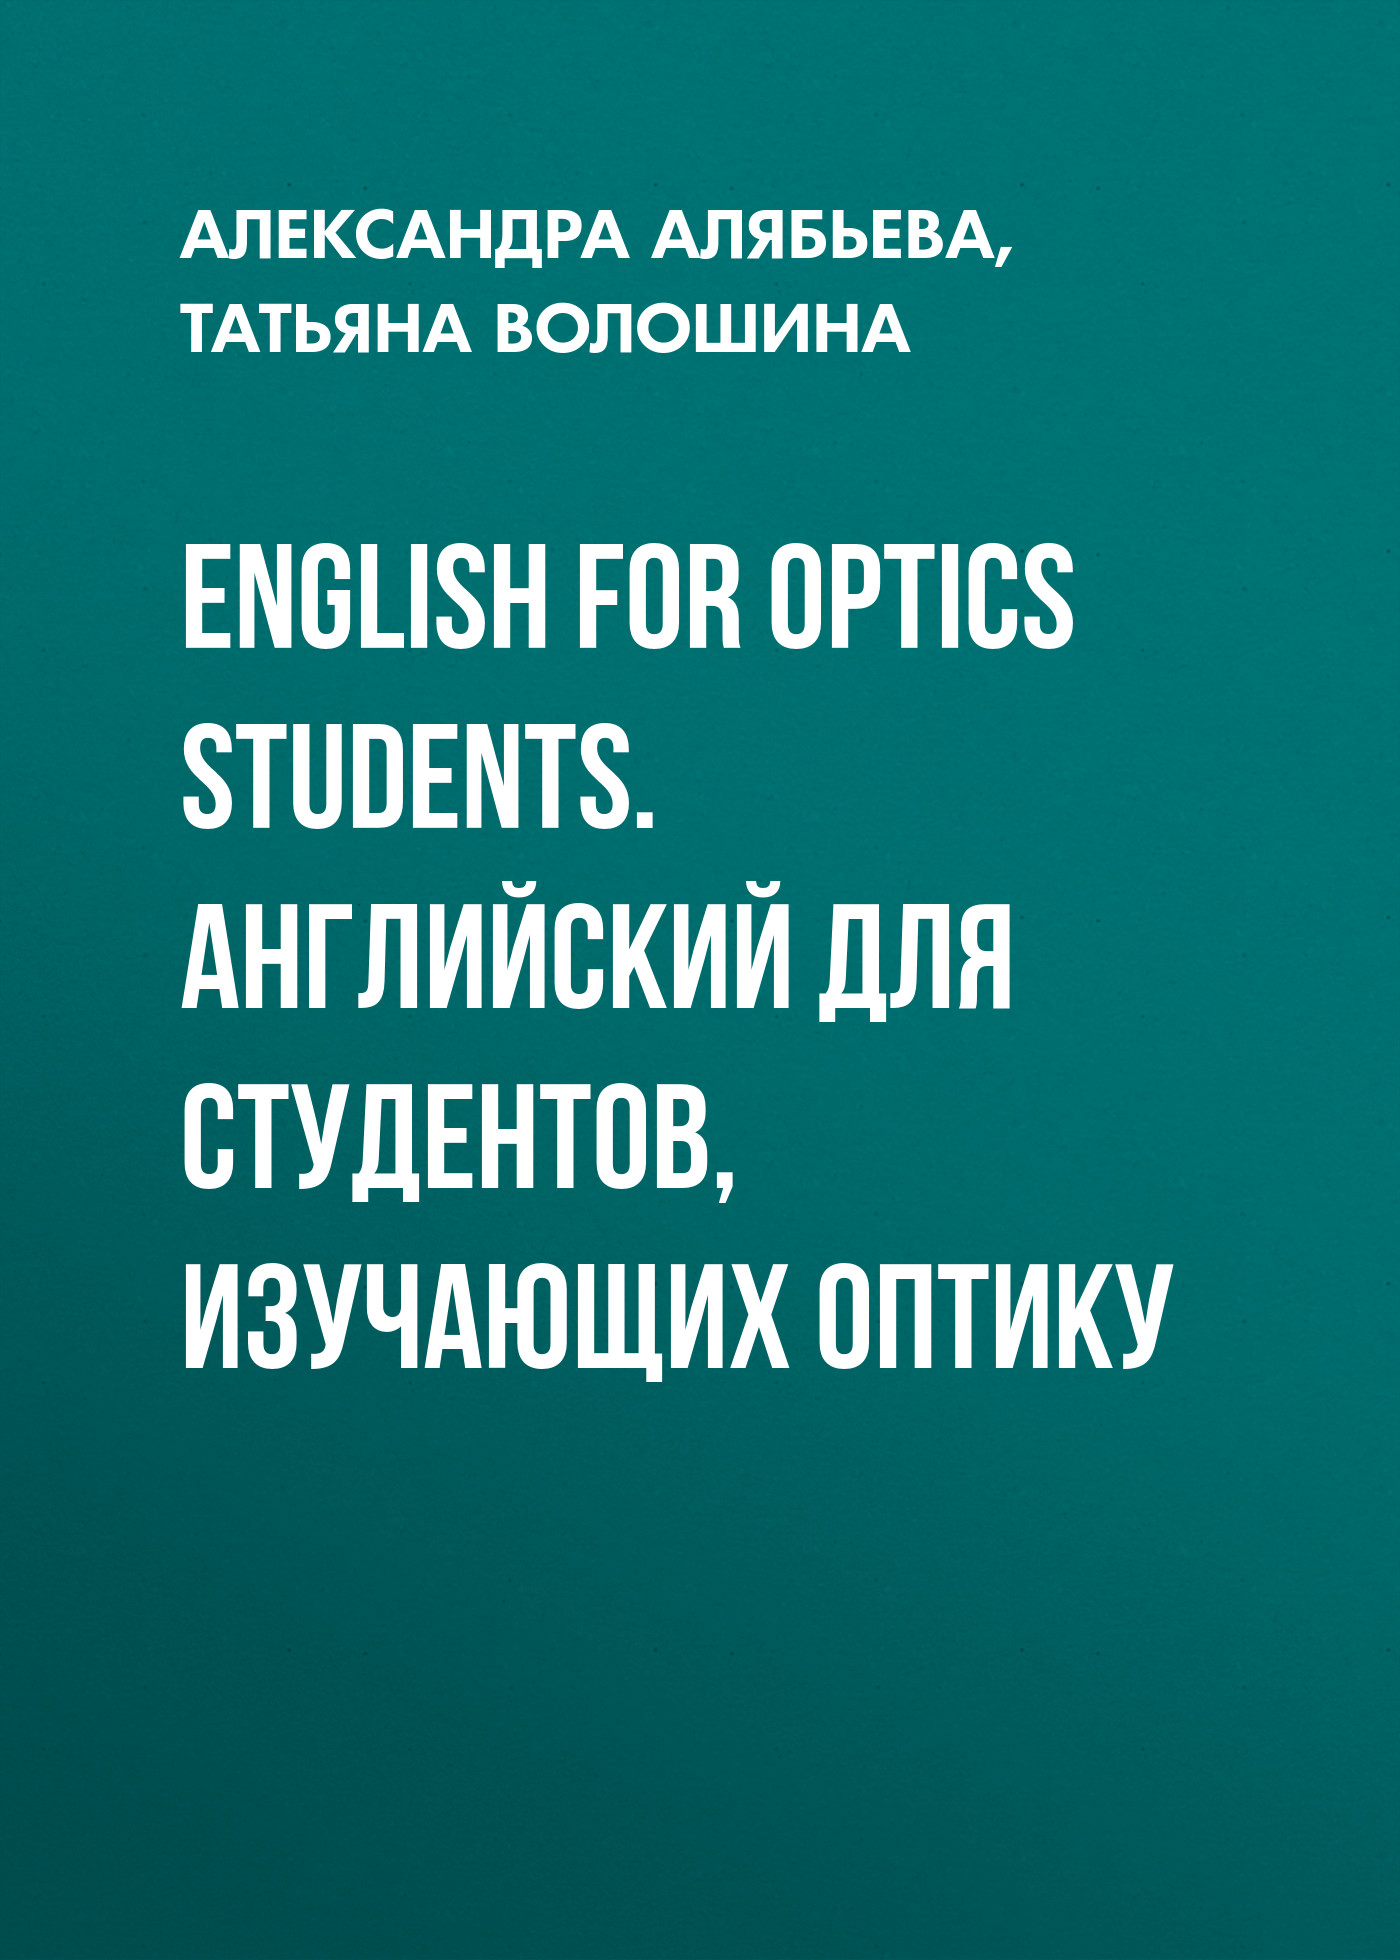 English for Optics Students.Английский для студентов, изучающих оптику